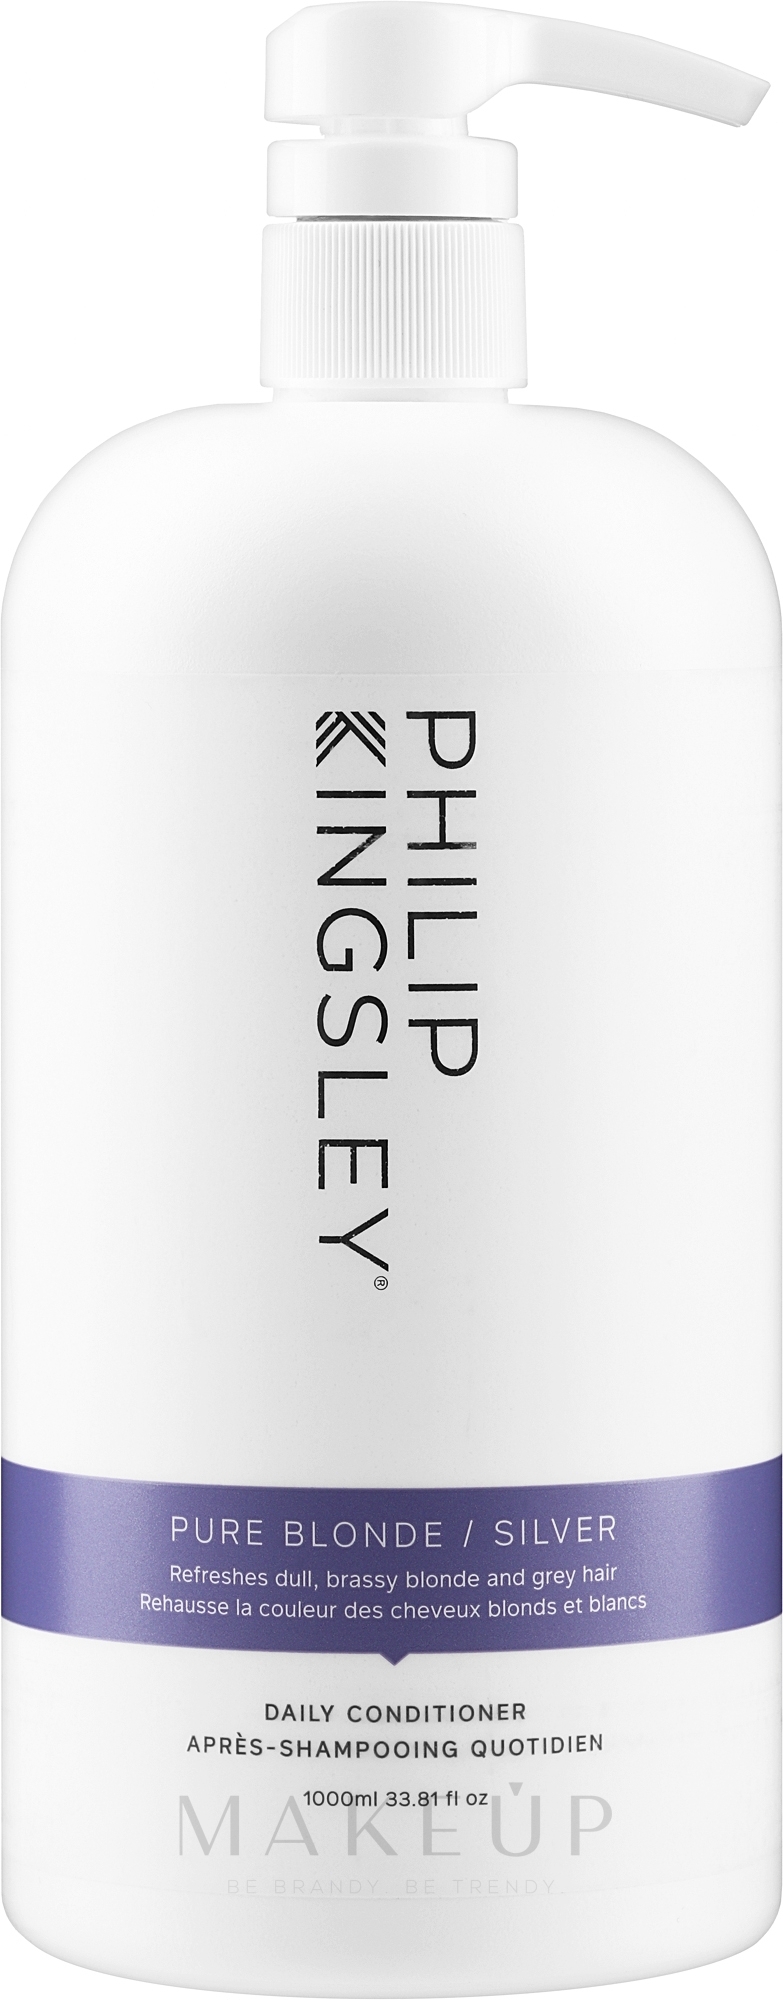 Conditioner für helles Haar - Philip Kingsley Pure Blonde/ Silver Brightening Daily Conditioner — Bild 1000 ml